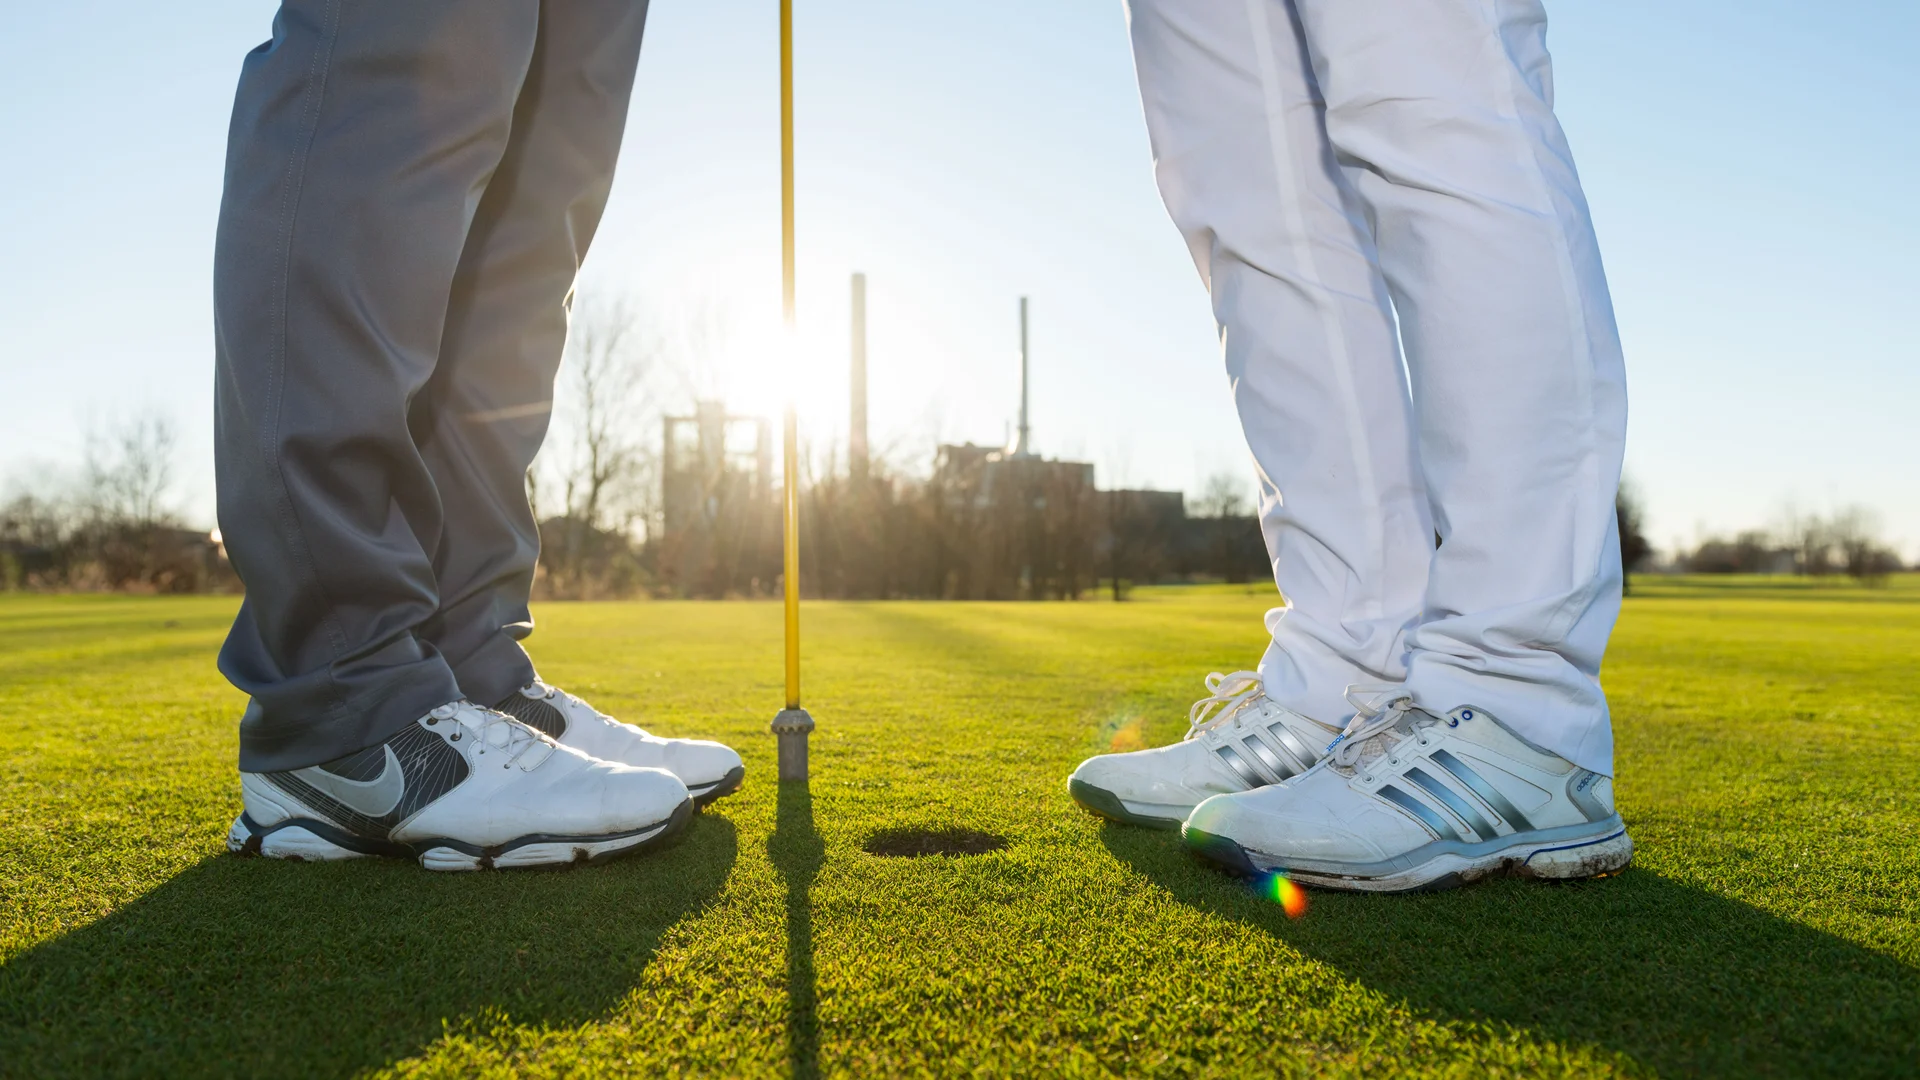 Zwei Personen in Turnschuhen stehen voreinander vor einem Golfloch mit Fahne, Ausschnitt bis kurz über dem Knie